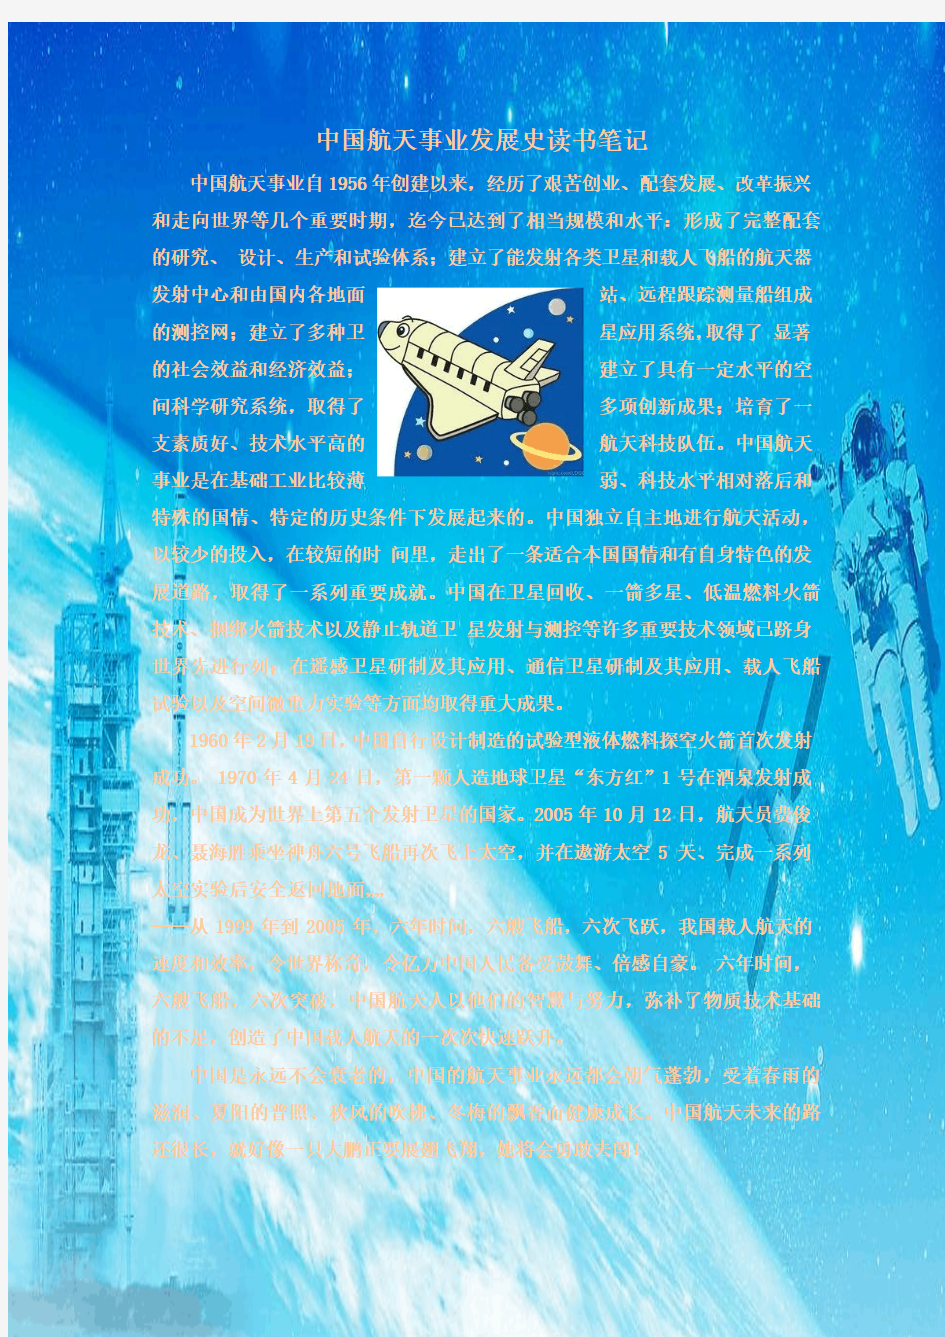 中国航天事业发展史读书笔记